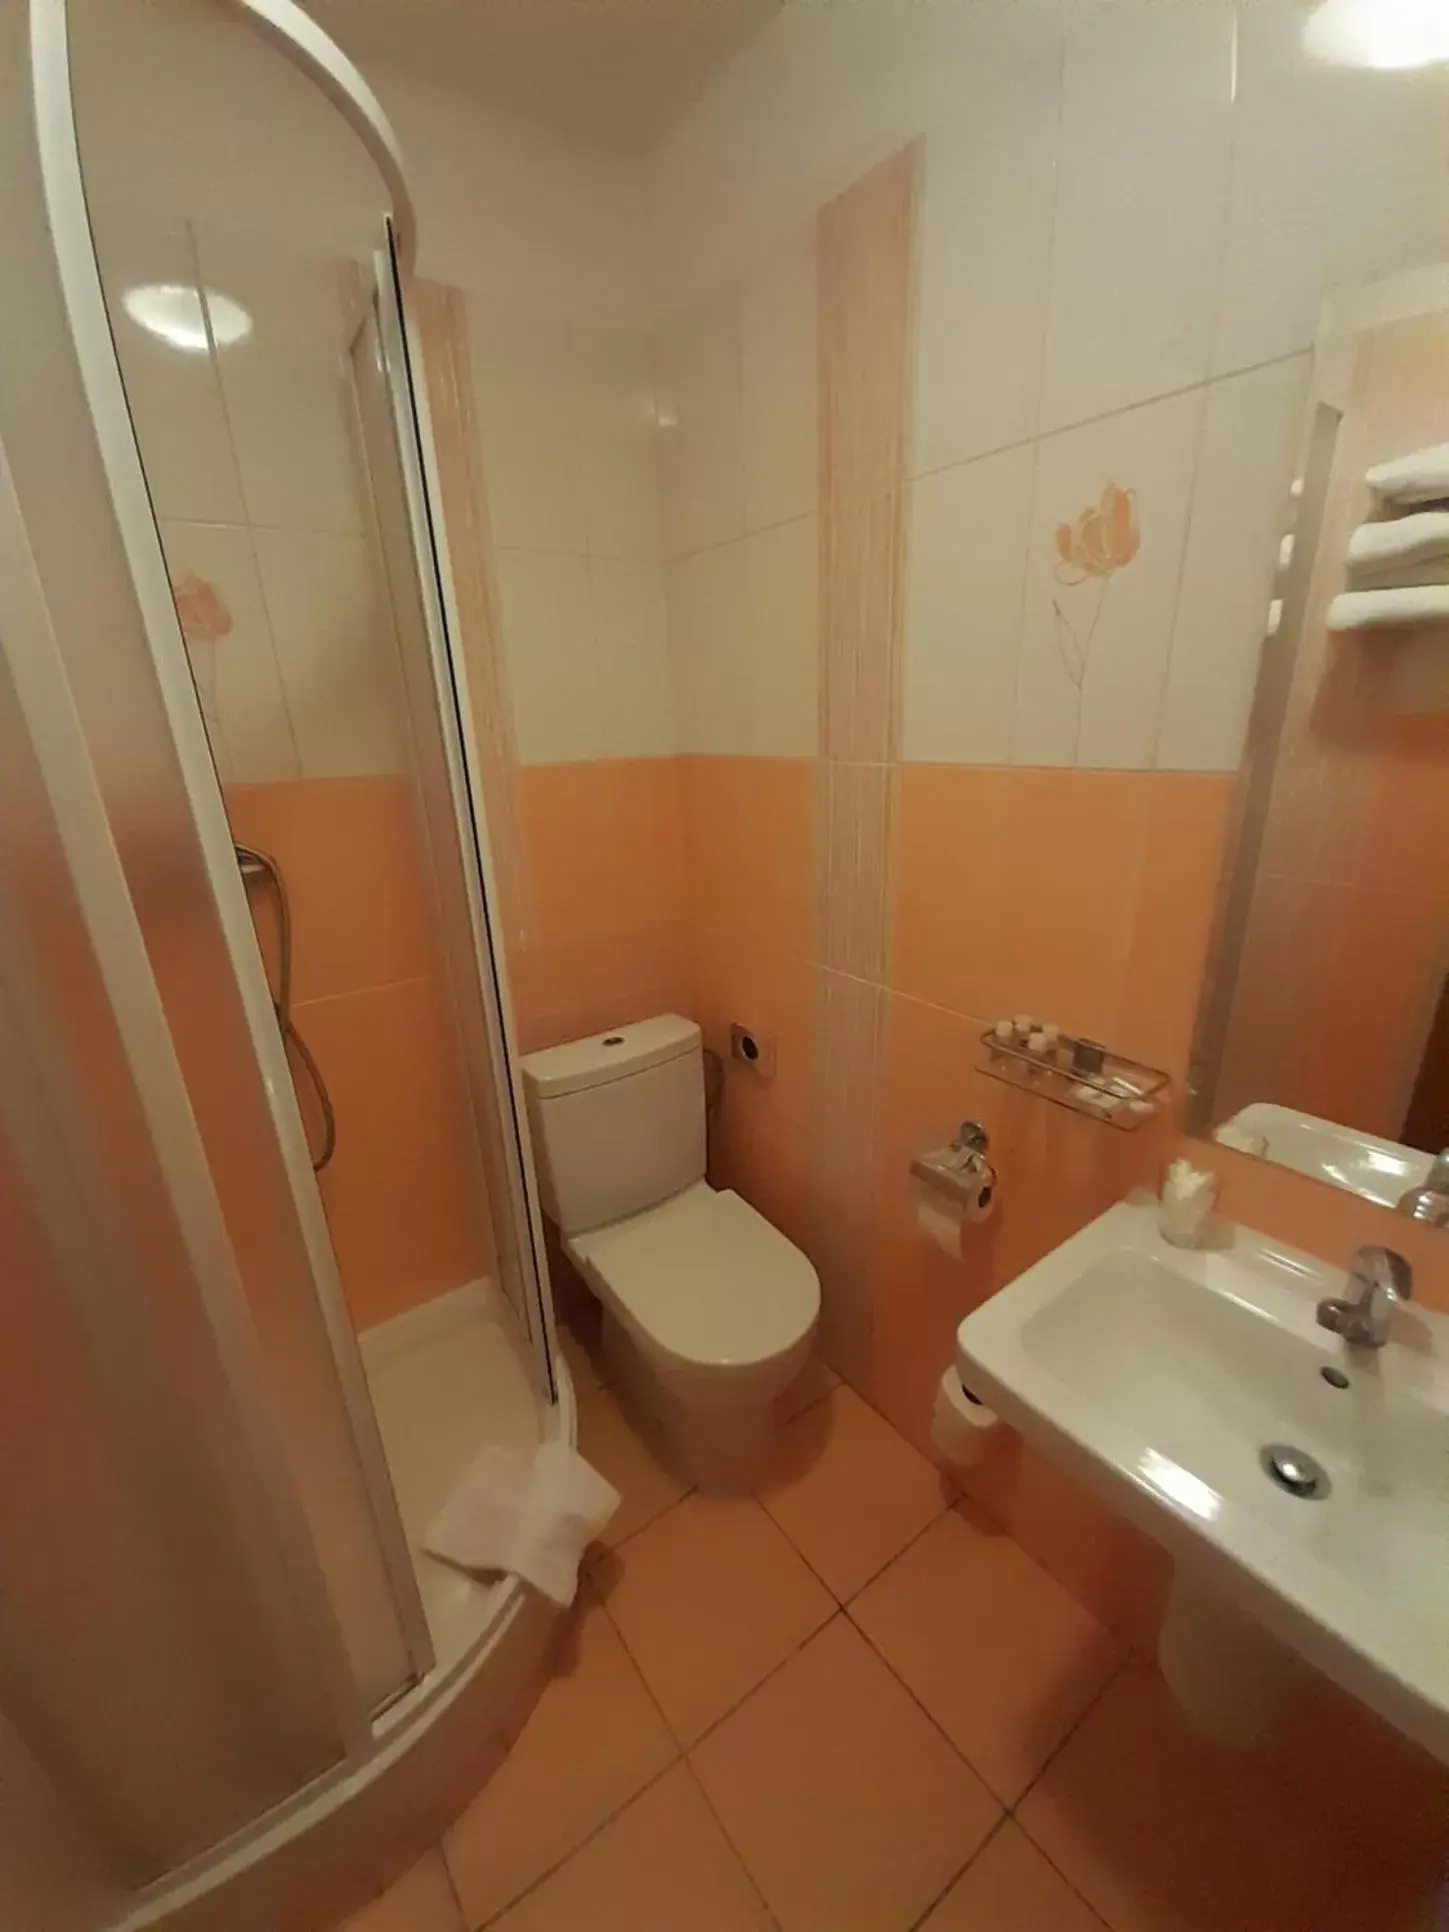 Bathroom in Hotel Brixen